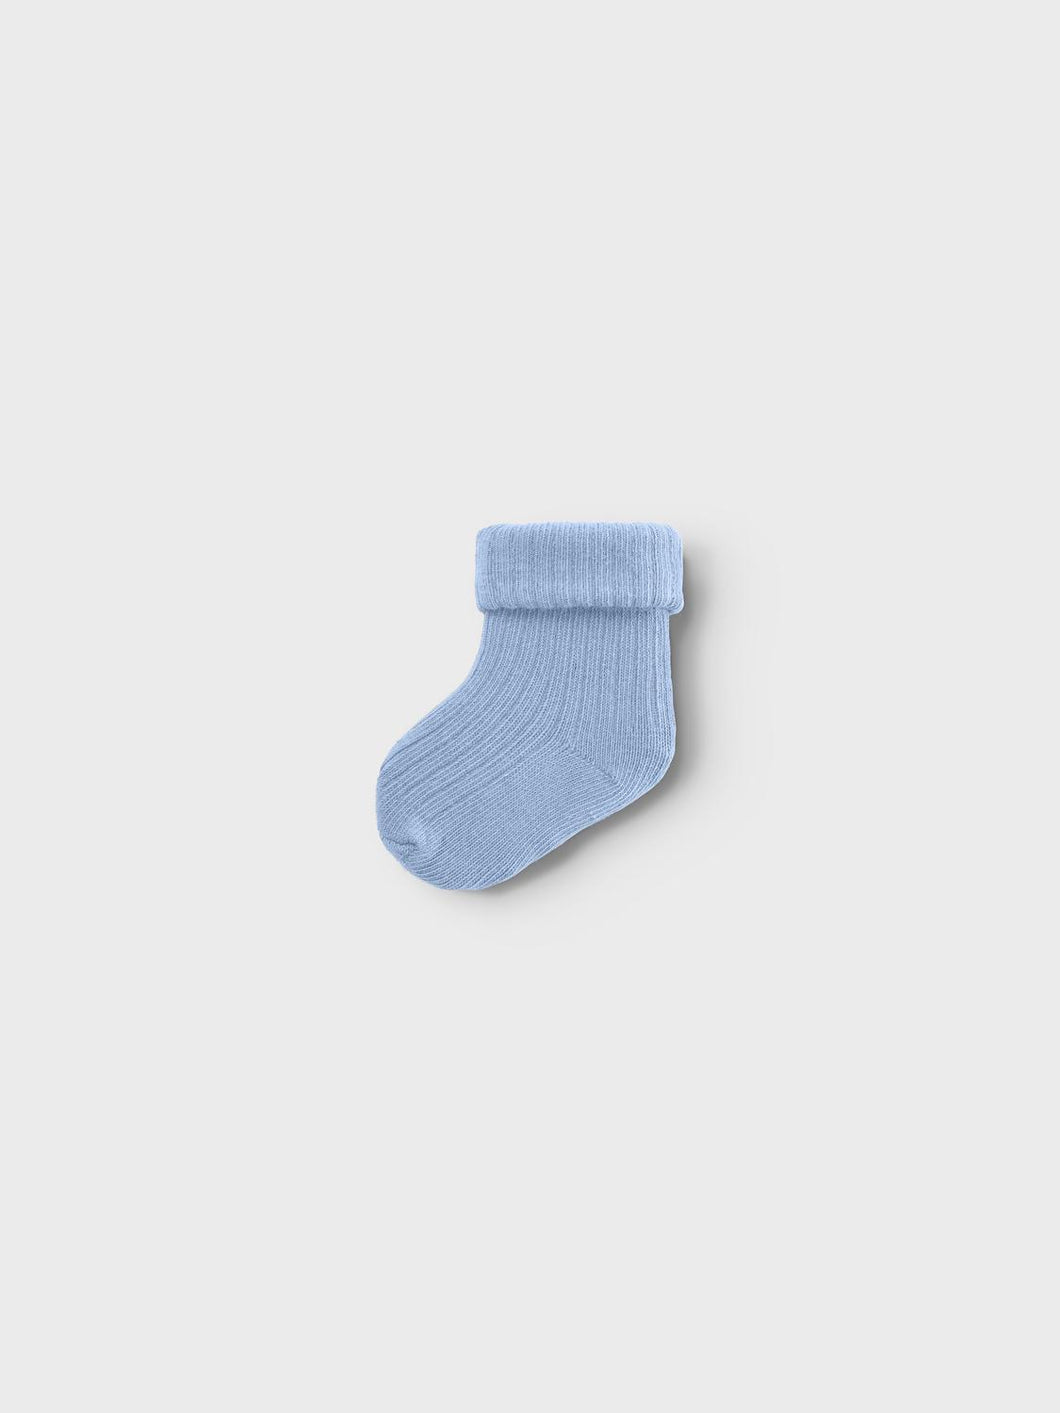 NBMNOBBU Socks - Chambray Blue